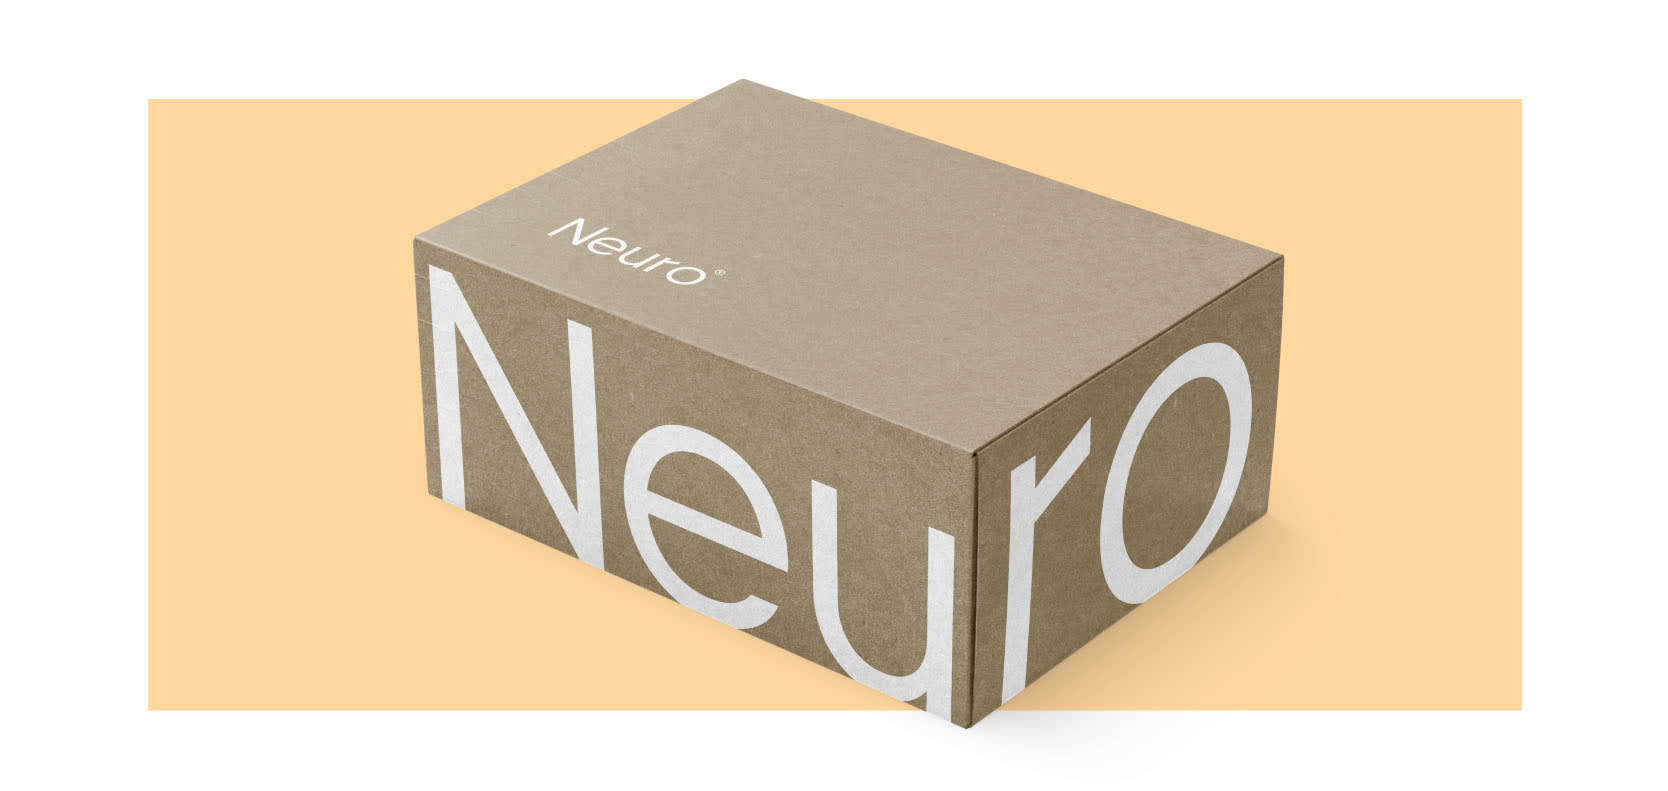 6 neuro tablet